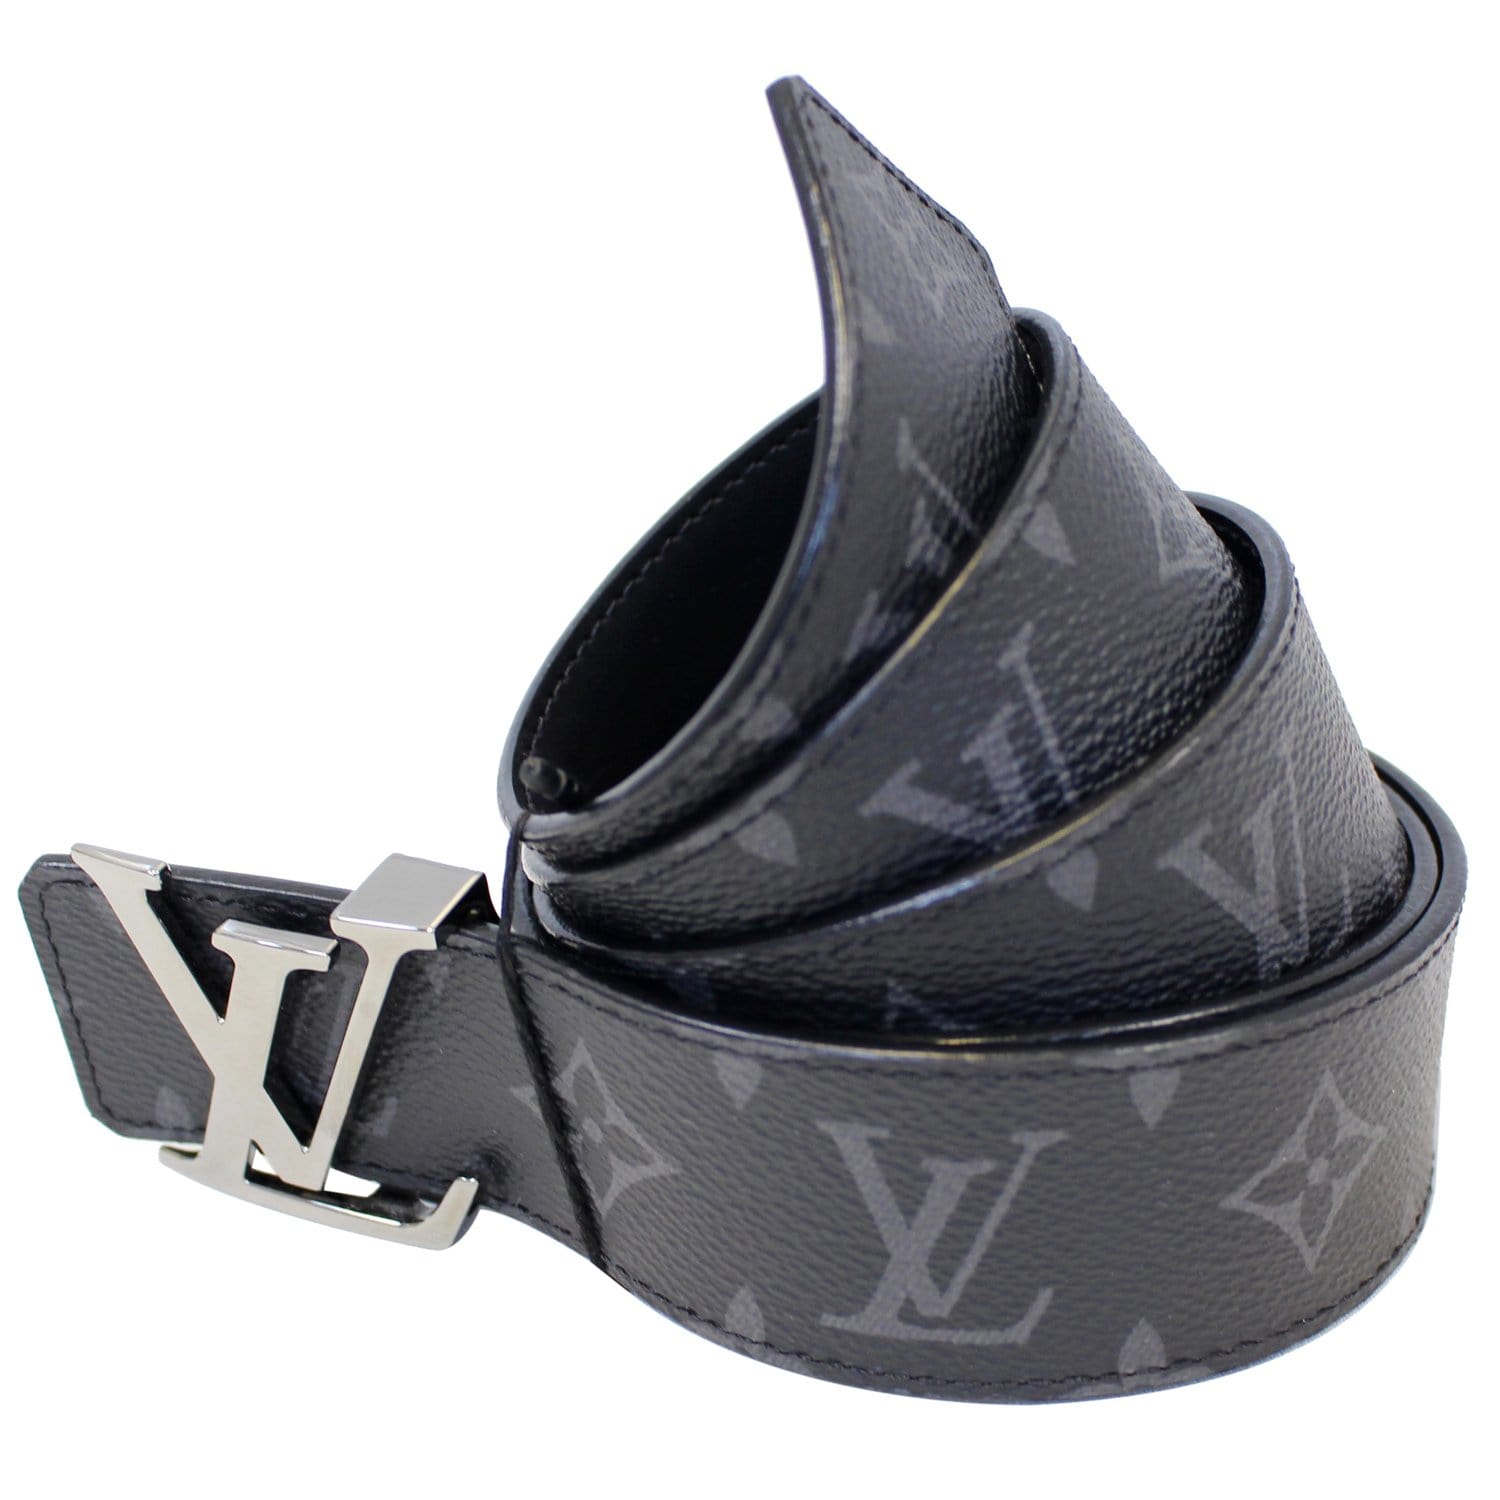 Louis Vuitton Reversible LV Initiales Belt